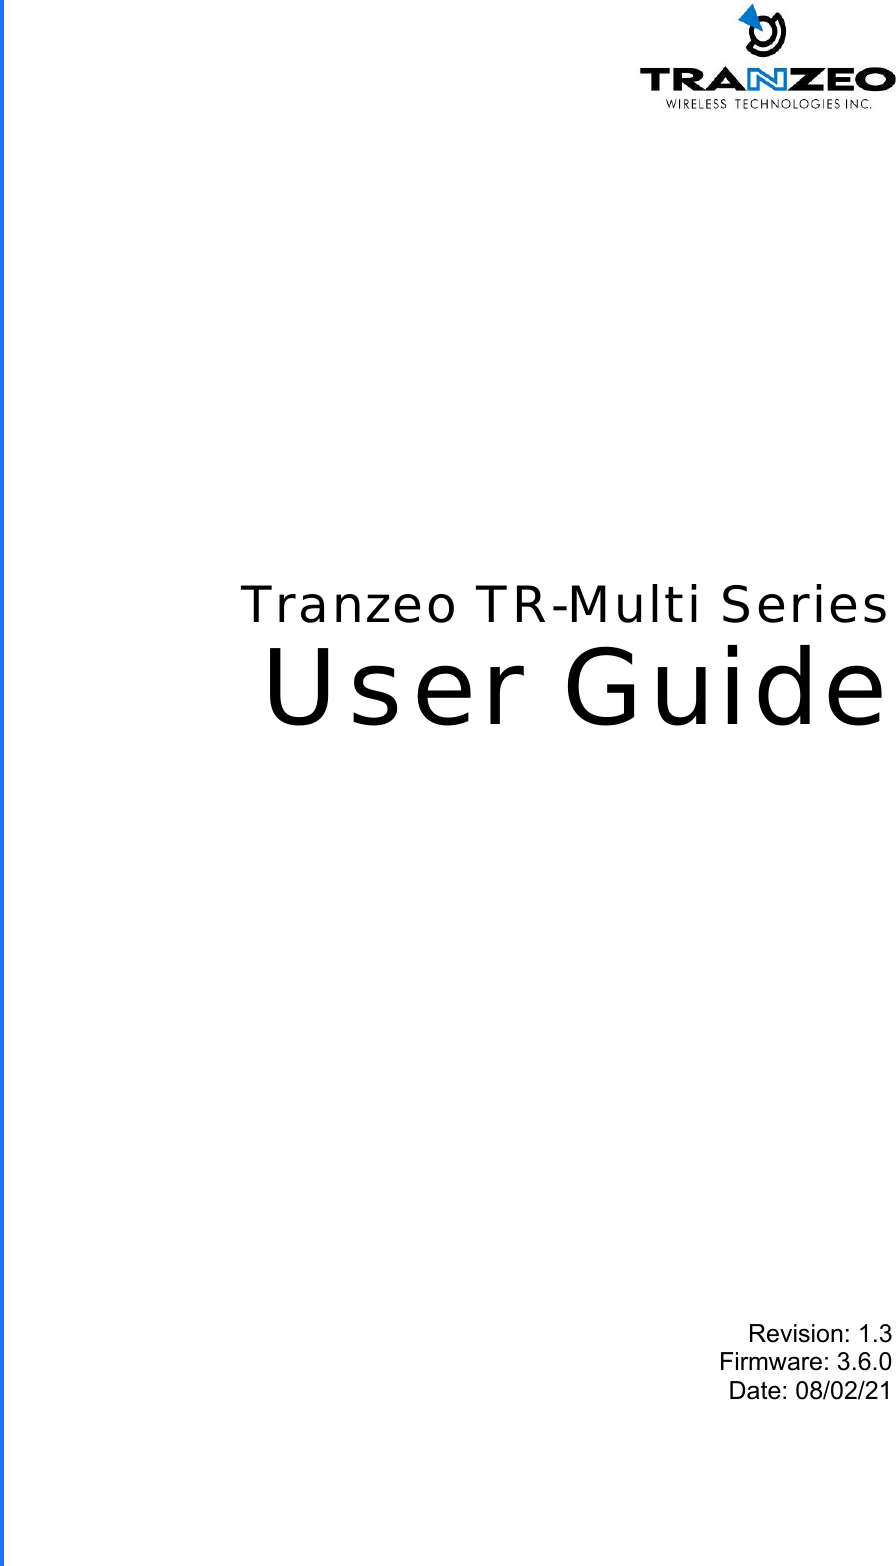  TR-Multi Series Revision: 1.3 Firmware: 3.6.0 Date: 08/02/21 Tranzeo TR-Multi Series User Guide 